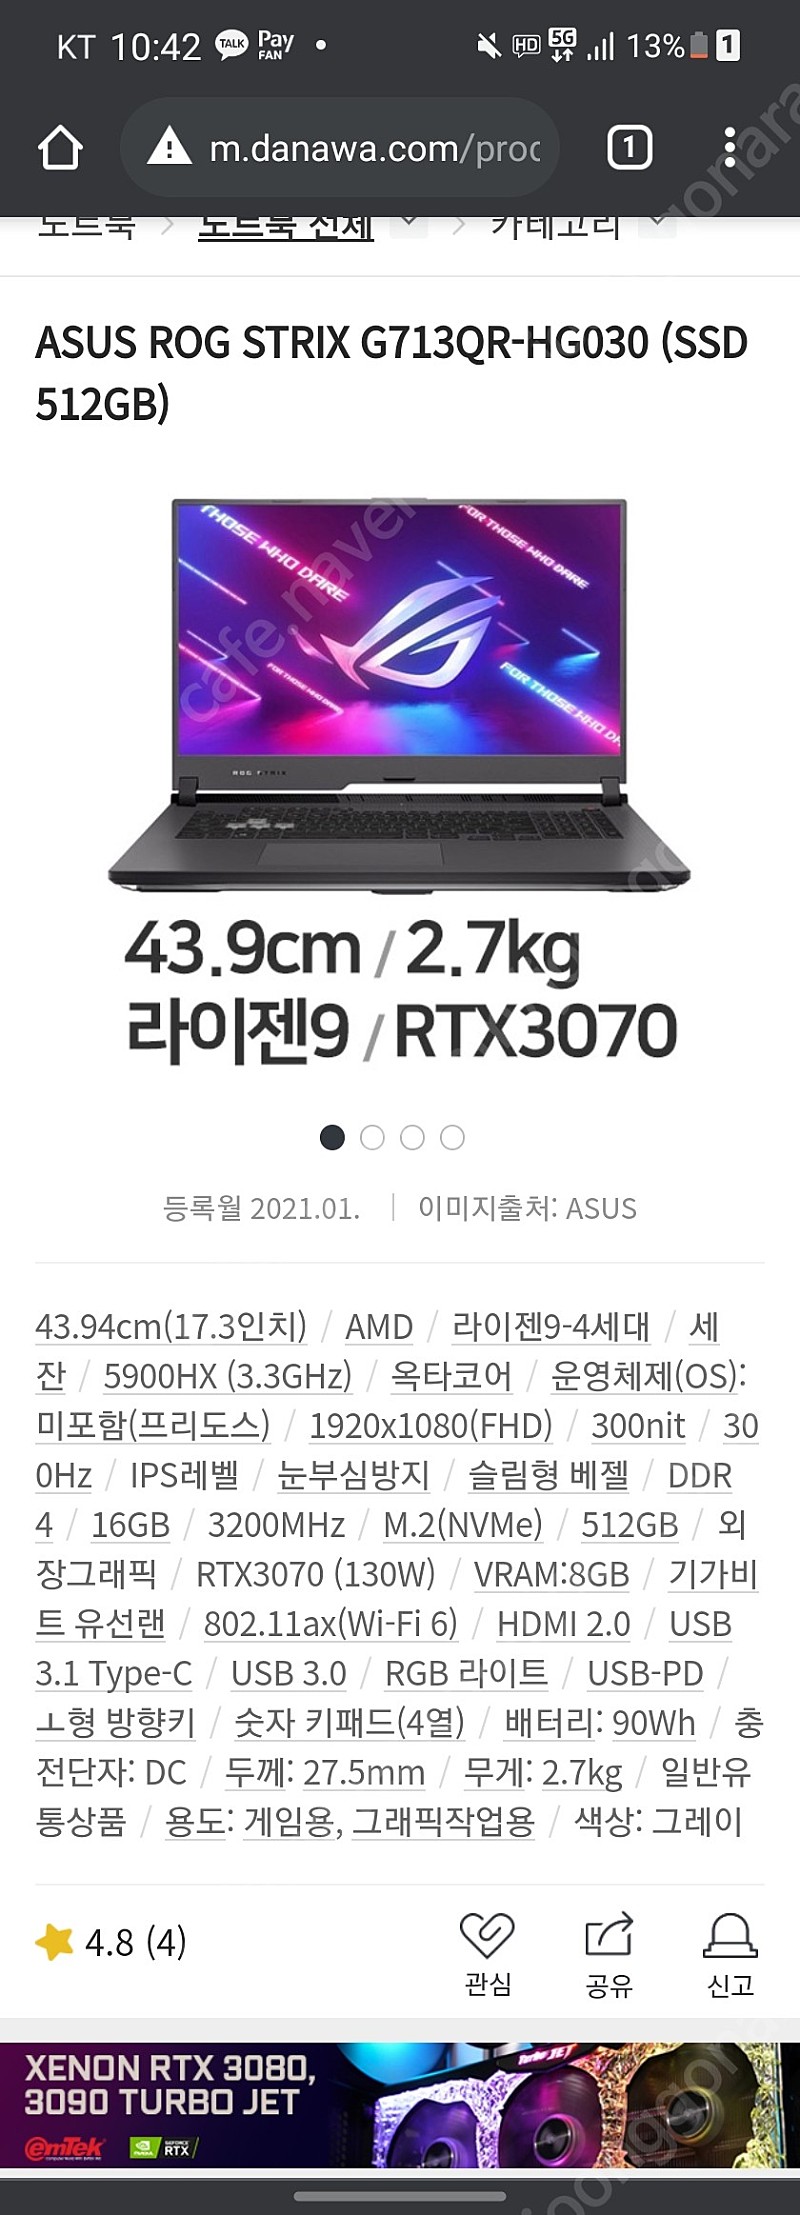 g713qr-hg030 노트북 판매합니다 RTX3070 라이젠9 5900hx